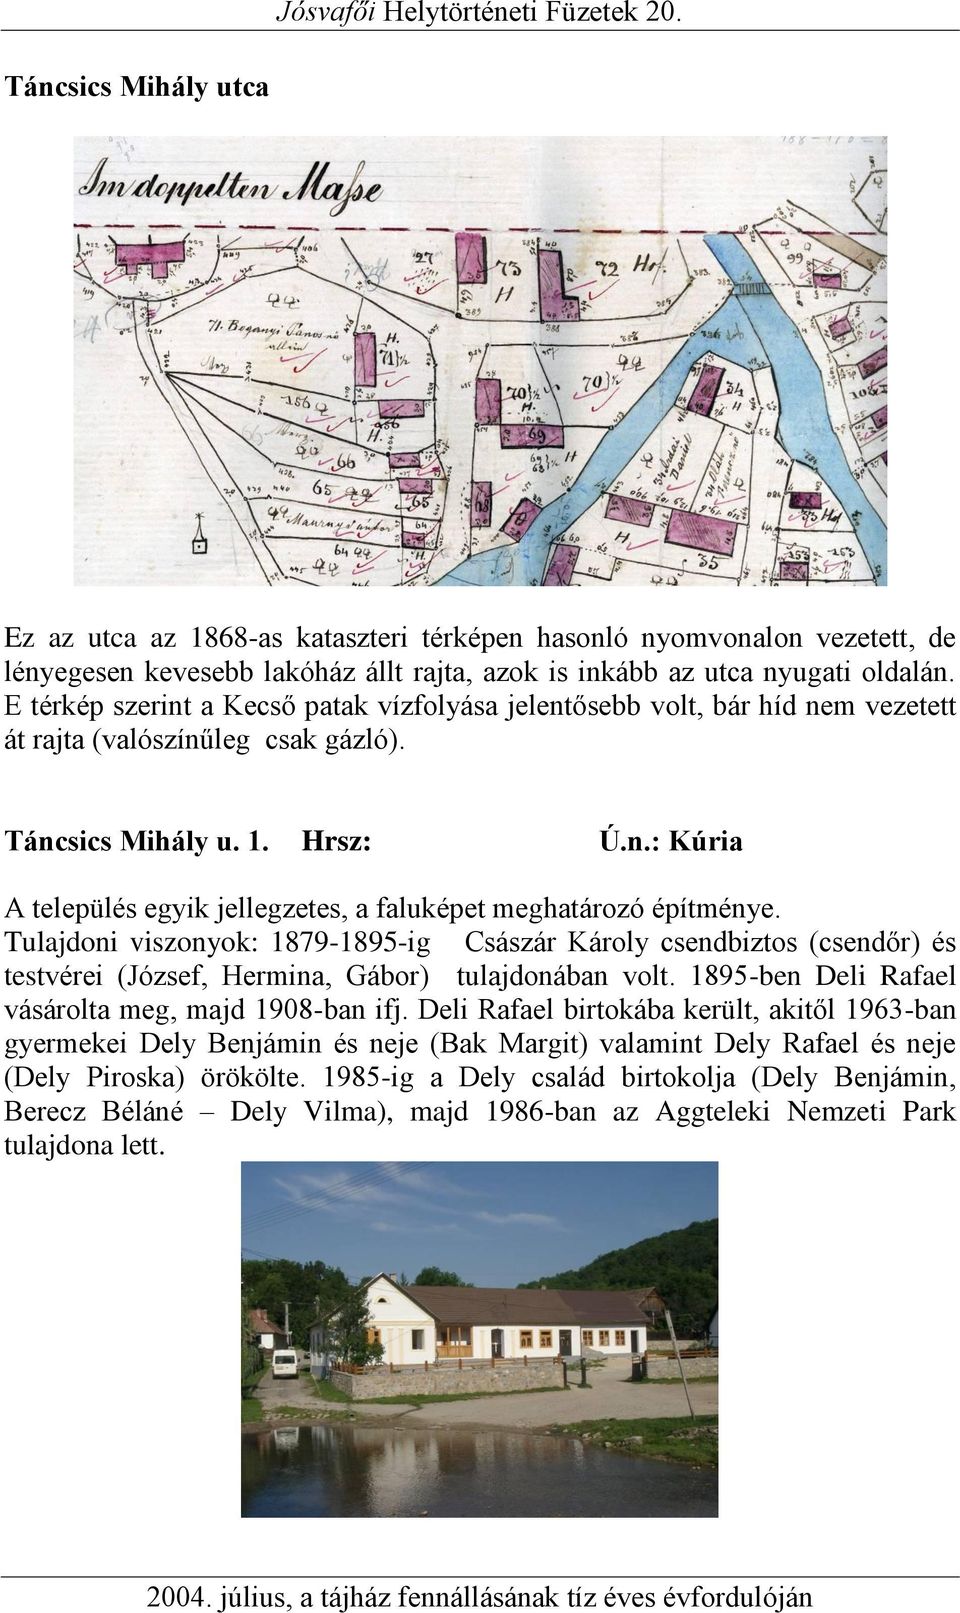 Tulajdoni viszonyok: 1879-1895-ig Császár Károly csendbiztos (csendőr) és testvérei (József, Hermina, Gábor) tulajdonában volt. 1895-ben Deli Rafael vásárolta meg, majd 1908-ban ifj.